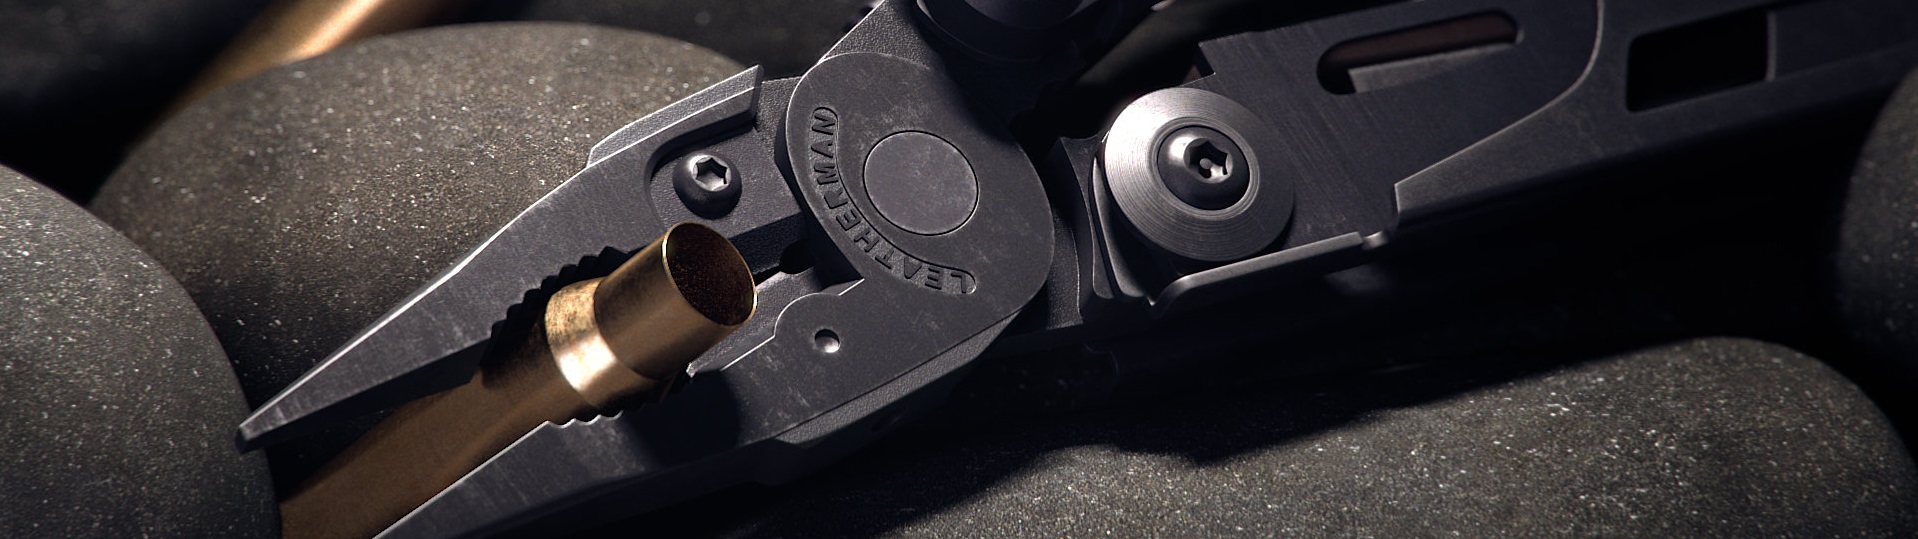 Военный мультитул Leatherman MUT Black с съемными компонентами для быстрой и легкой настройки инструментов для работы с оружием